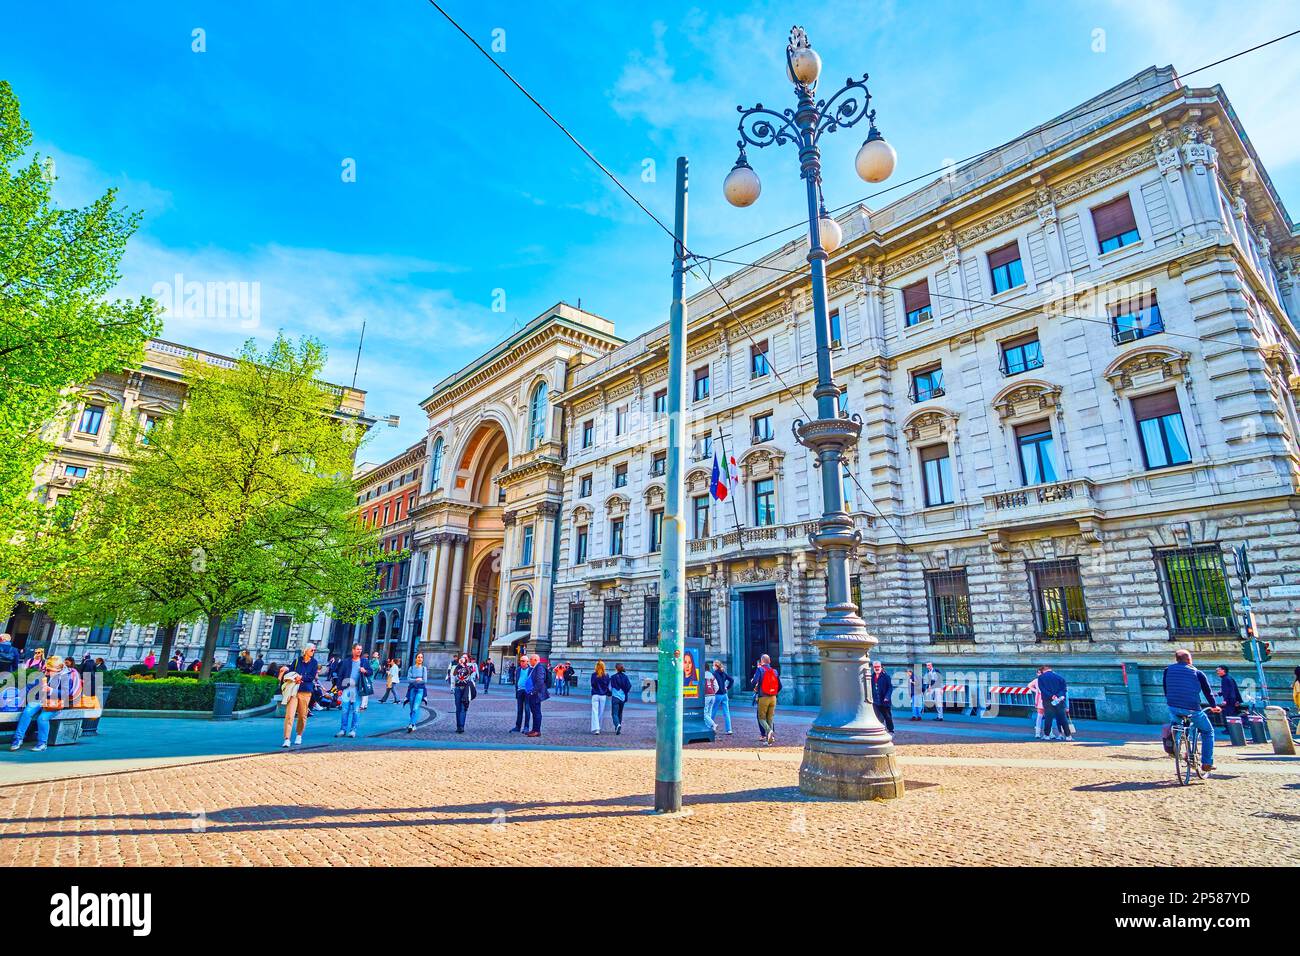 MAILAND, ITALIEN - 11. APRIL 2022: Großes Eingangsportal zur Galleria Vittorio Emanuele II auf der Piazza della Scala, am 11. April in Mailand, Italien Stockfoto